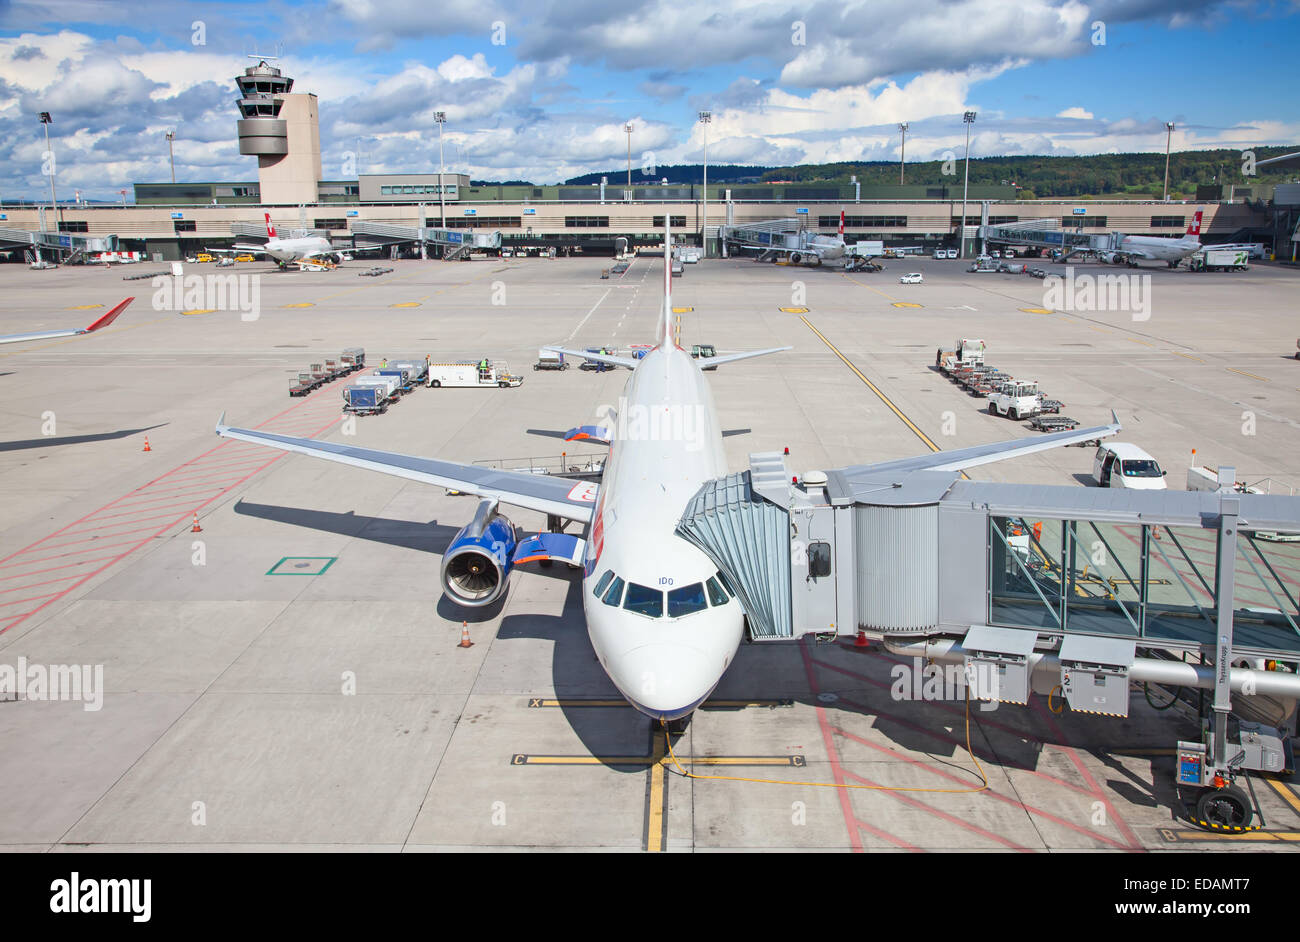 ZURICH - SEPTEMBER 21: British Airways A-330 preparing for flight on September 21, 2014 in Zurich, Switzerland. Zurich airport i Stock Photo